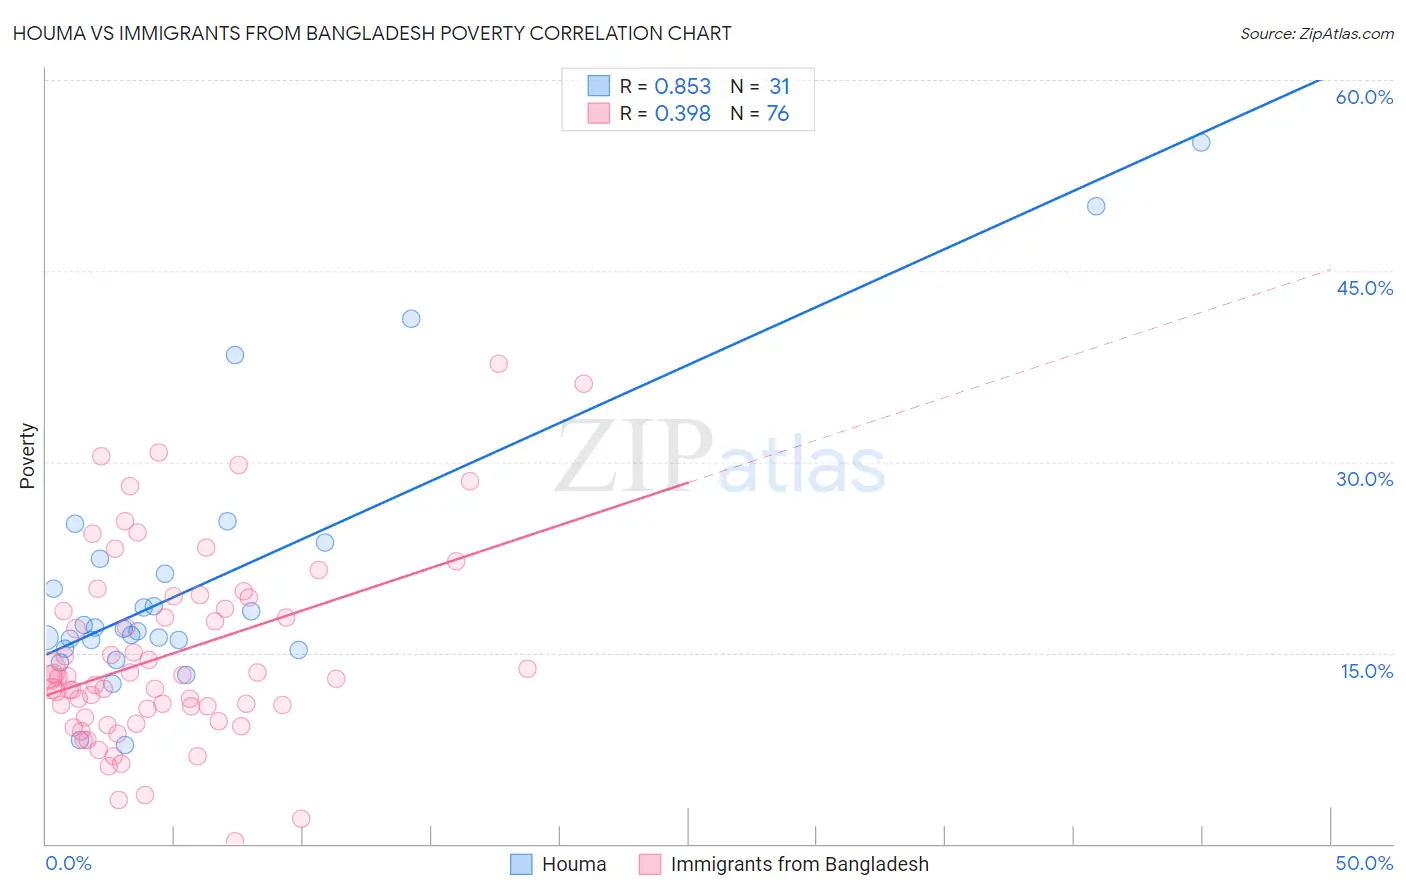 Houma vs Immigrants from Bangladesh Poverty